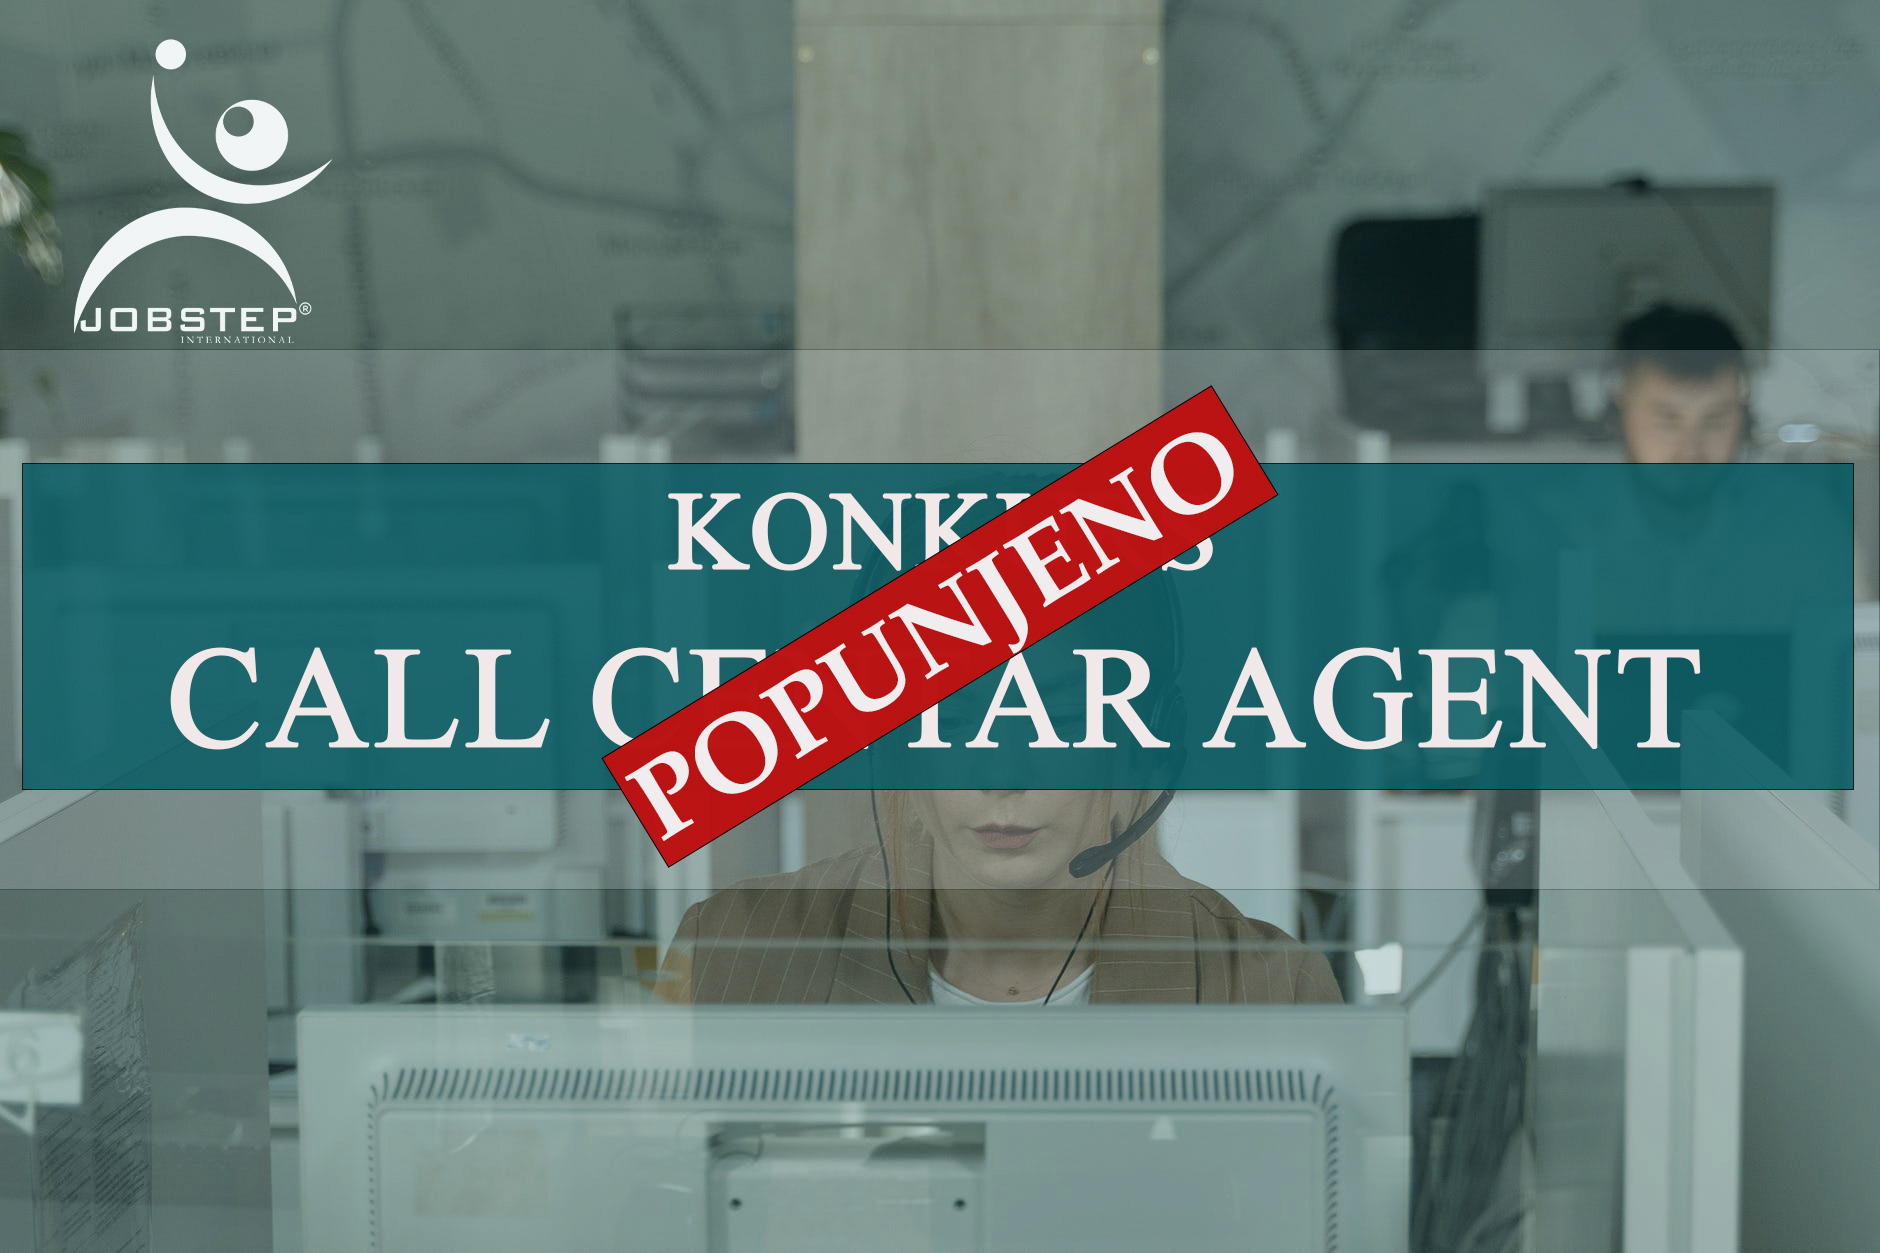 Call Centar Agent Beograd